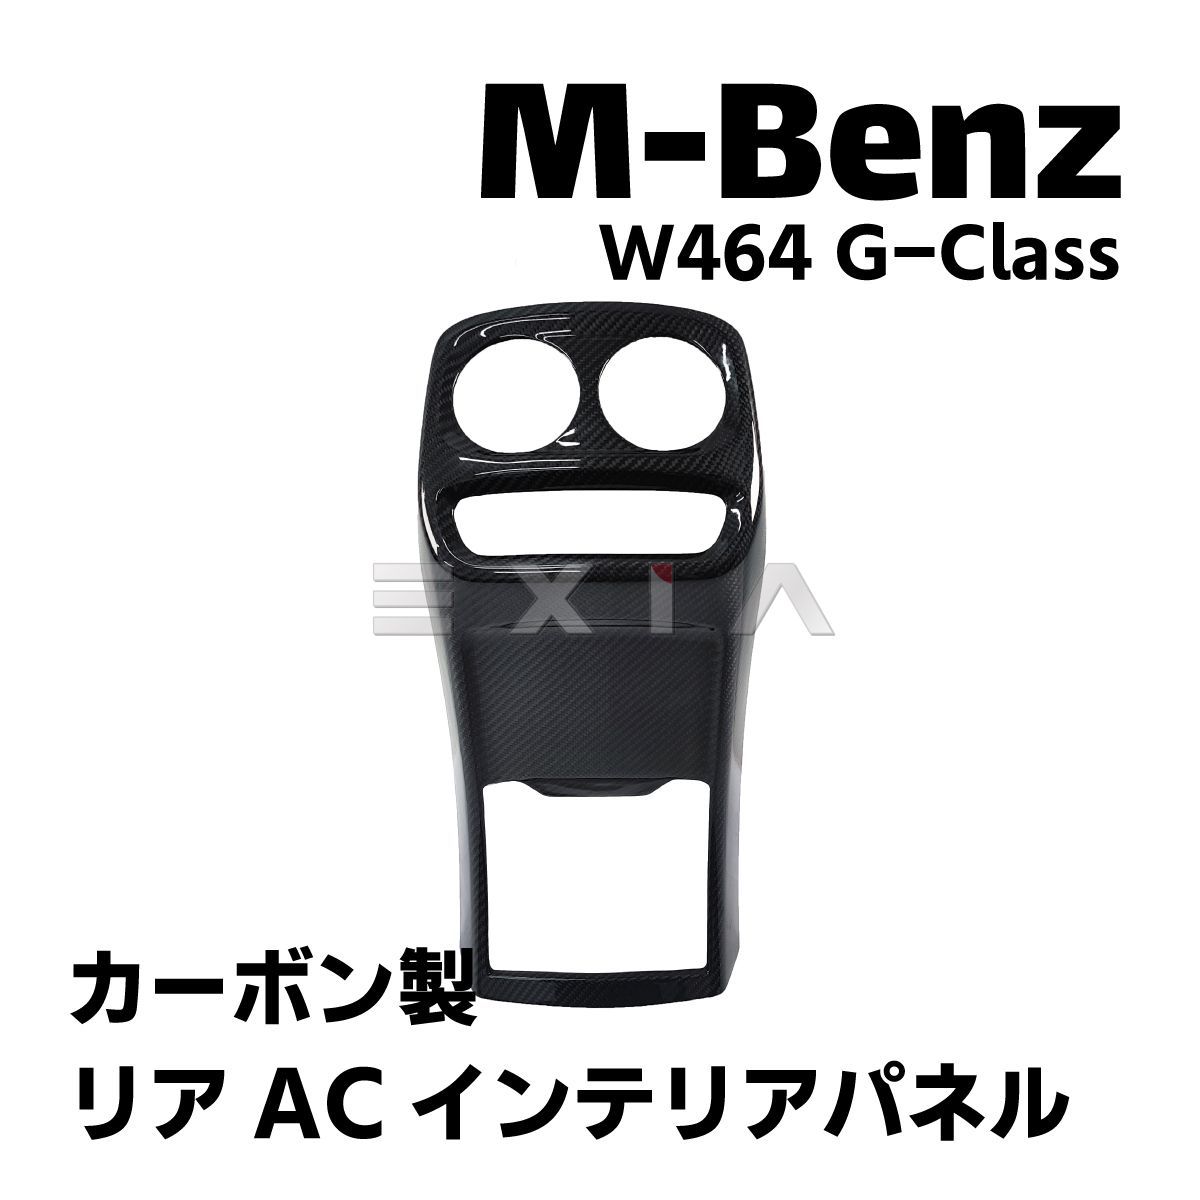 ベンツ W464 Gクラス カーボン製 リアACインテリアパネル エアコンパネル カバー W463a ゲレンデ G350d G550 G63 AMG  メルセデス カスタム 黒 ブラック - メルカリ